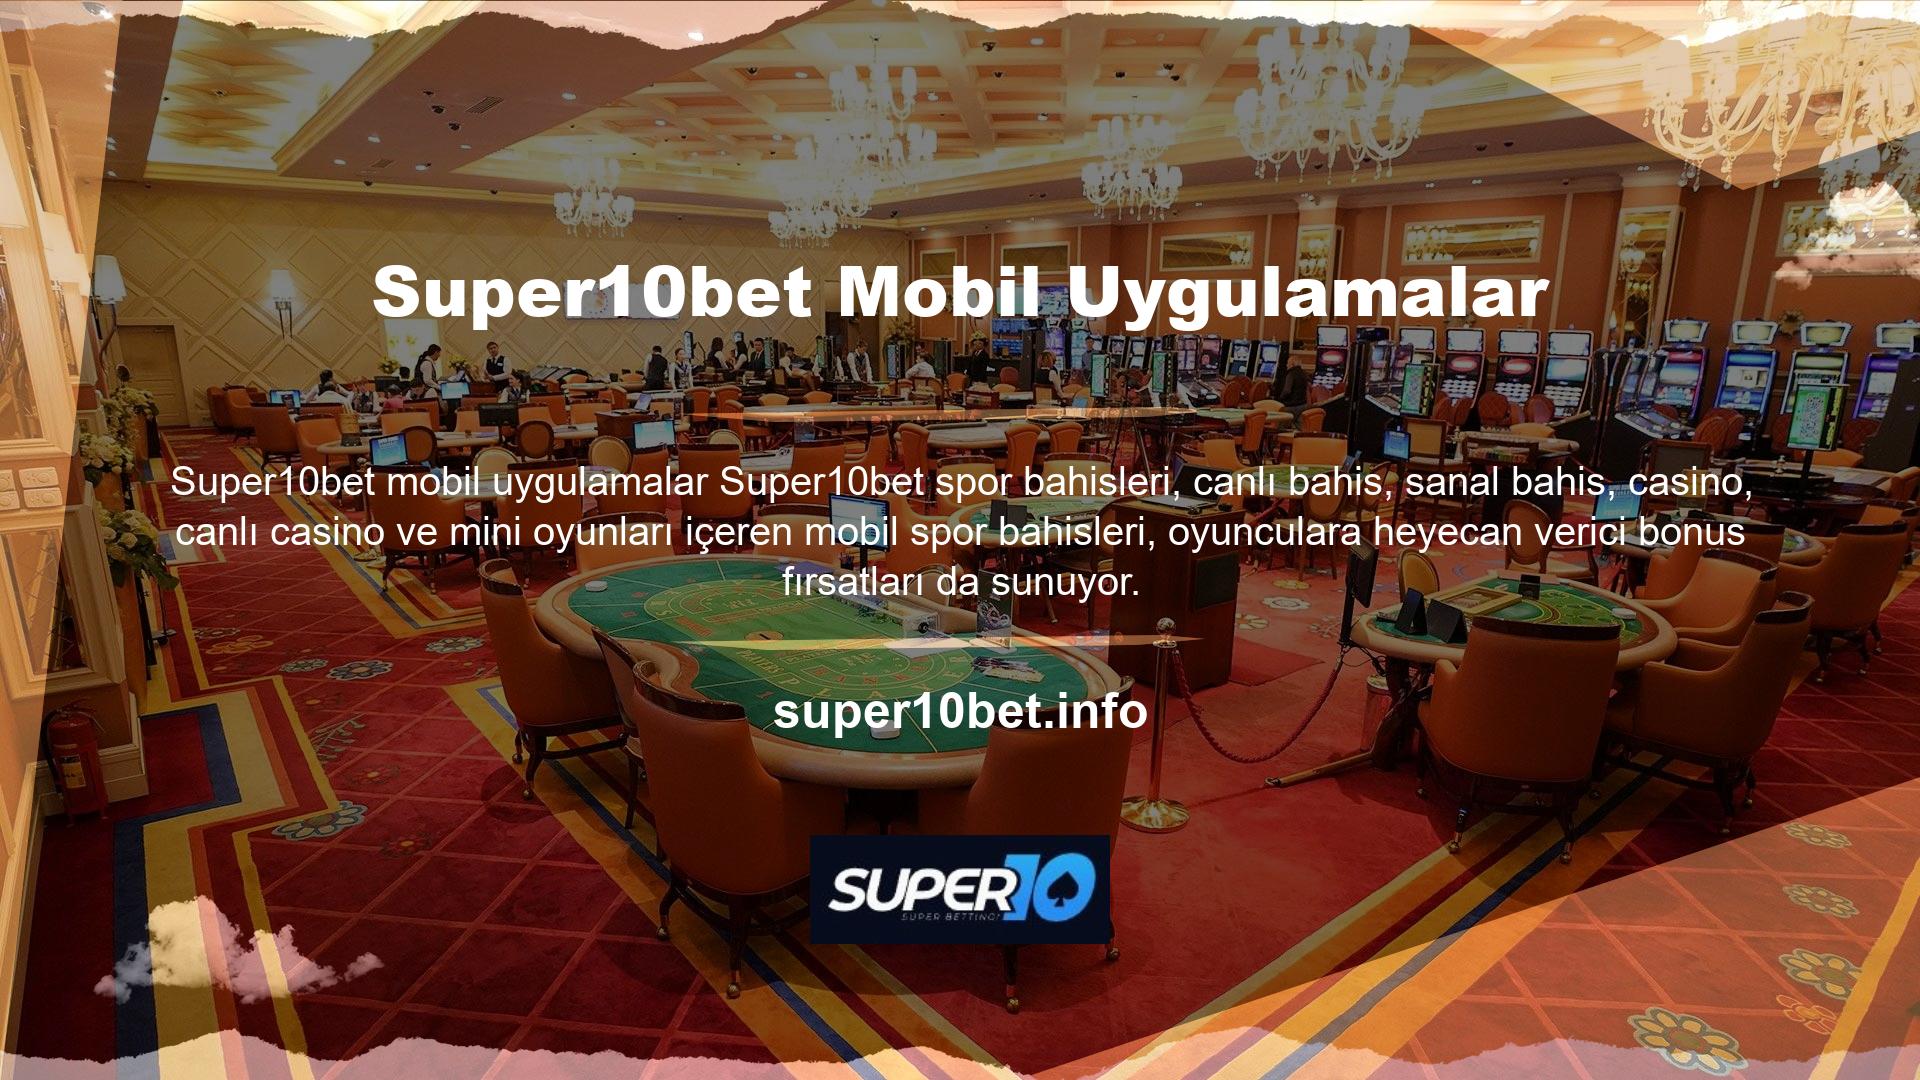 Super10bet Bahis tüm kullanıcılara mobil destek sunarak istediğiniz zaman siteye erişmenize ve bahis oynamanıza olanak tanır